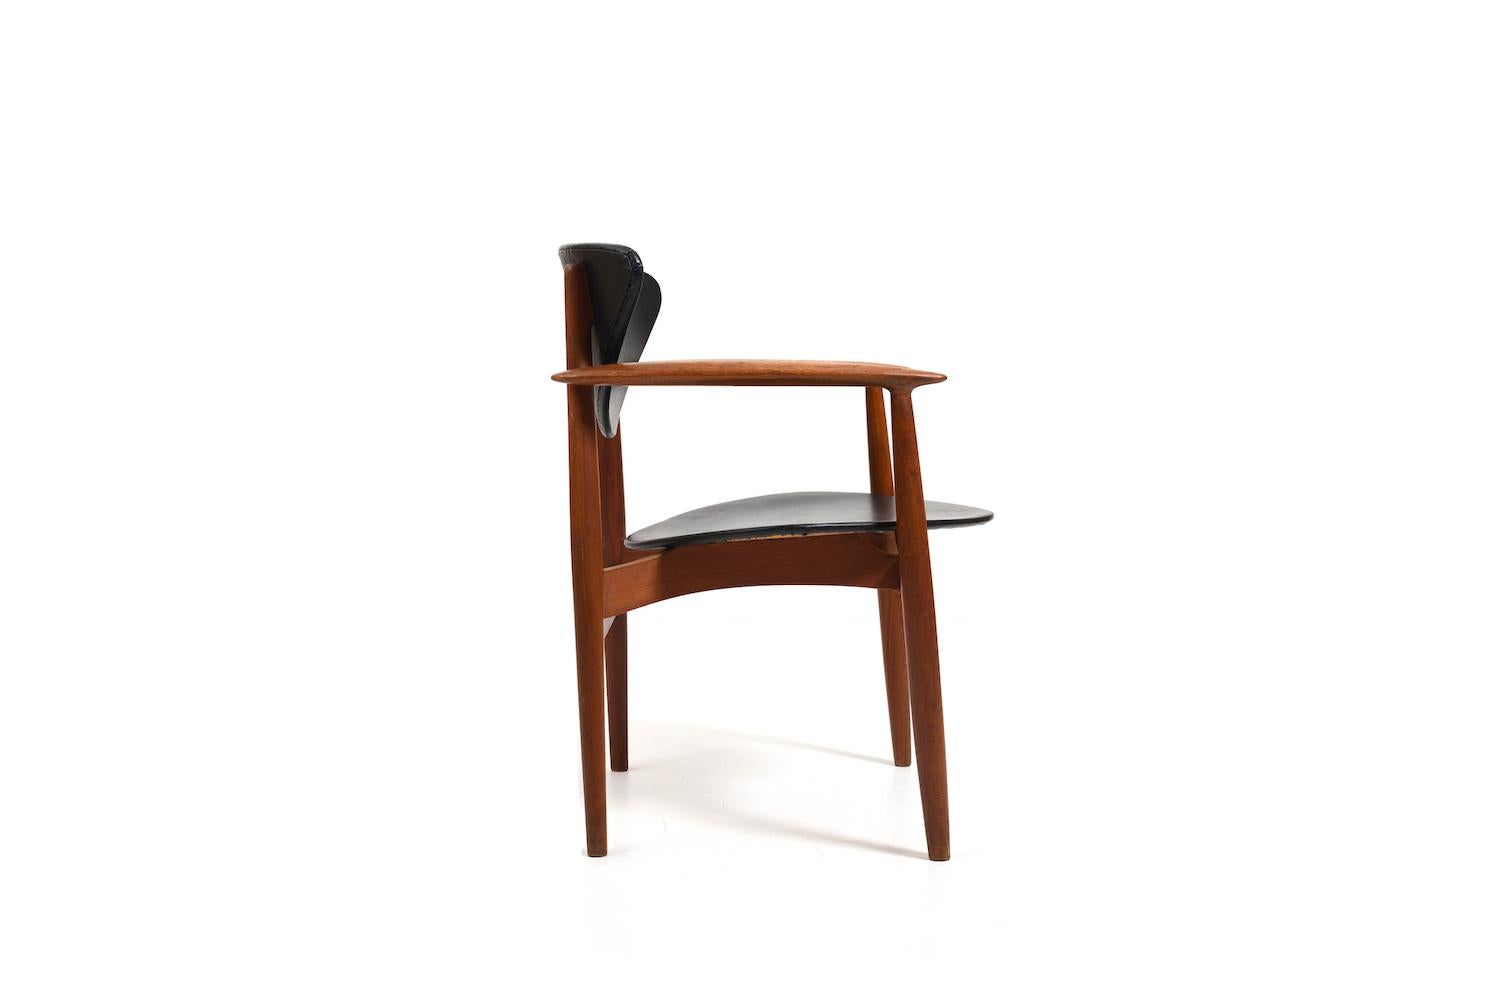 Rare fauteuil Erik Wørts en teck massif et simili cuir pour Norden Møbelfabrik Danemark. Conçu et produit dans les années 1850. Tous en état d'origine.
La dernière photo montre la chaise dans un vieux magazine danois des années 50.